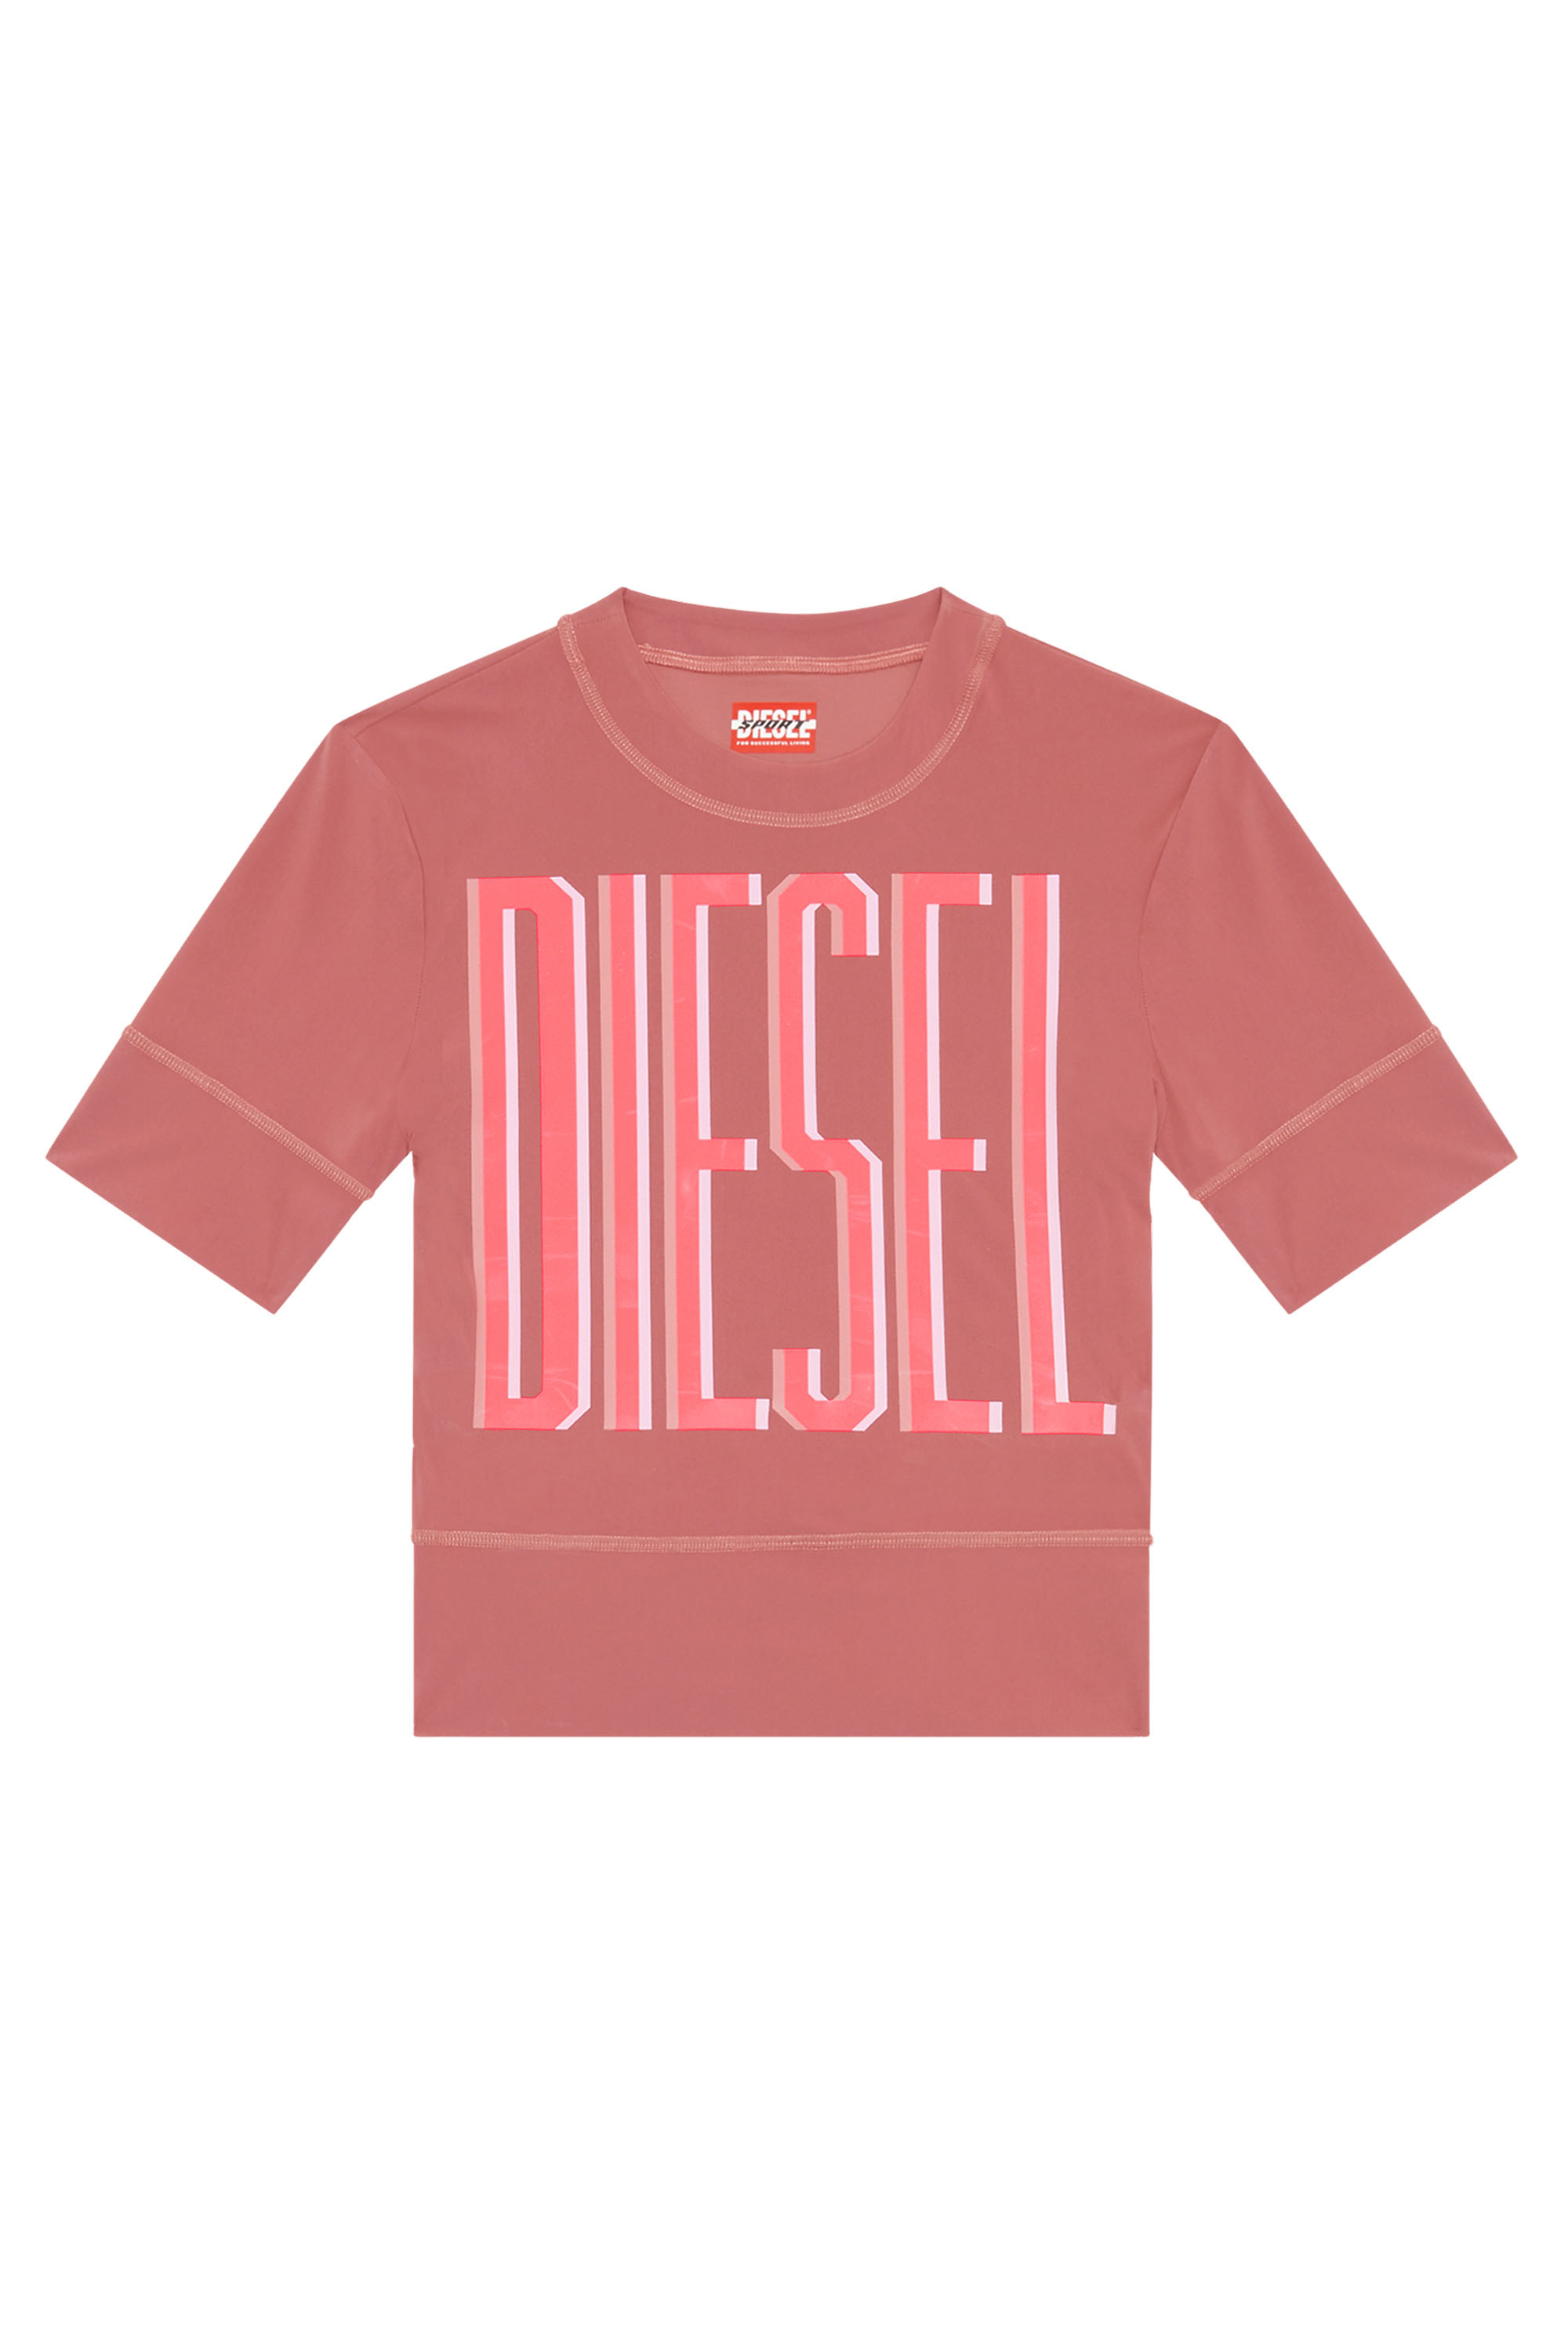 Diesel - AWTEE-JULES-WT06, Rojo - Image 1